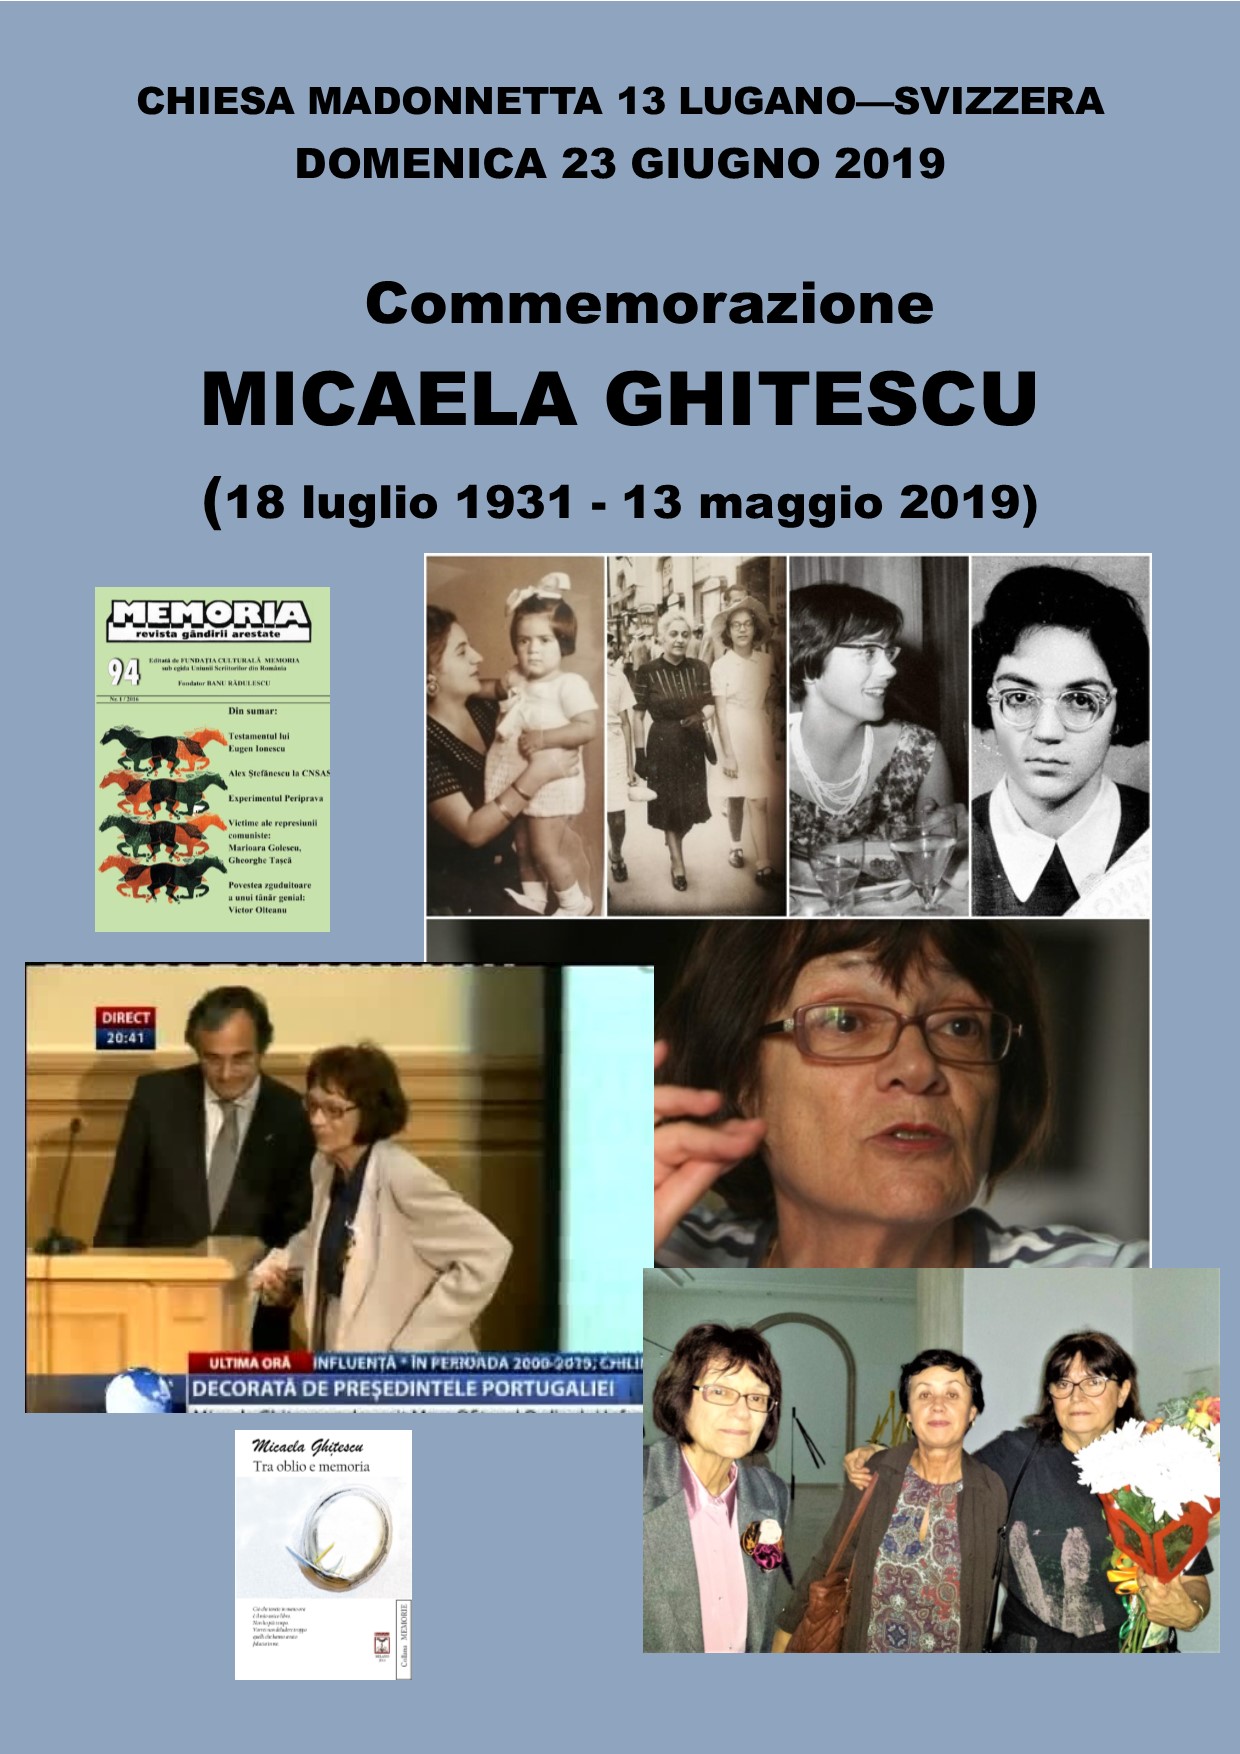 Lugano-Svizzera. Commemorazione Micaela Ghițescu (18 luglio 1931 – 13 maggio 2019).